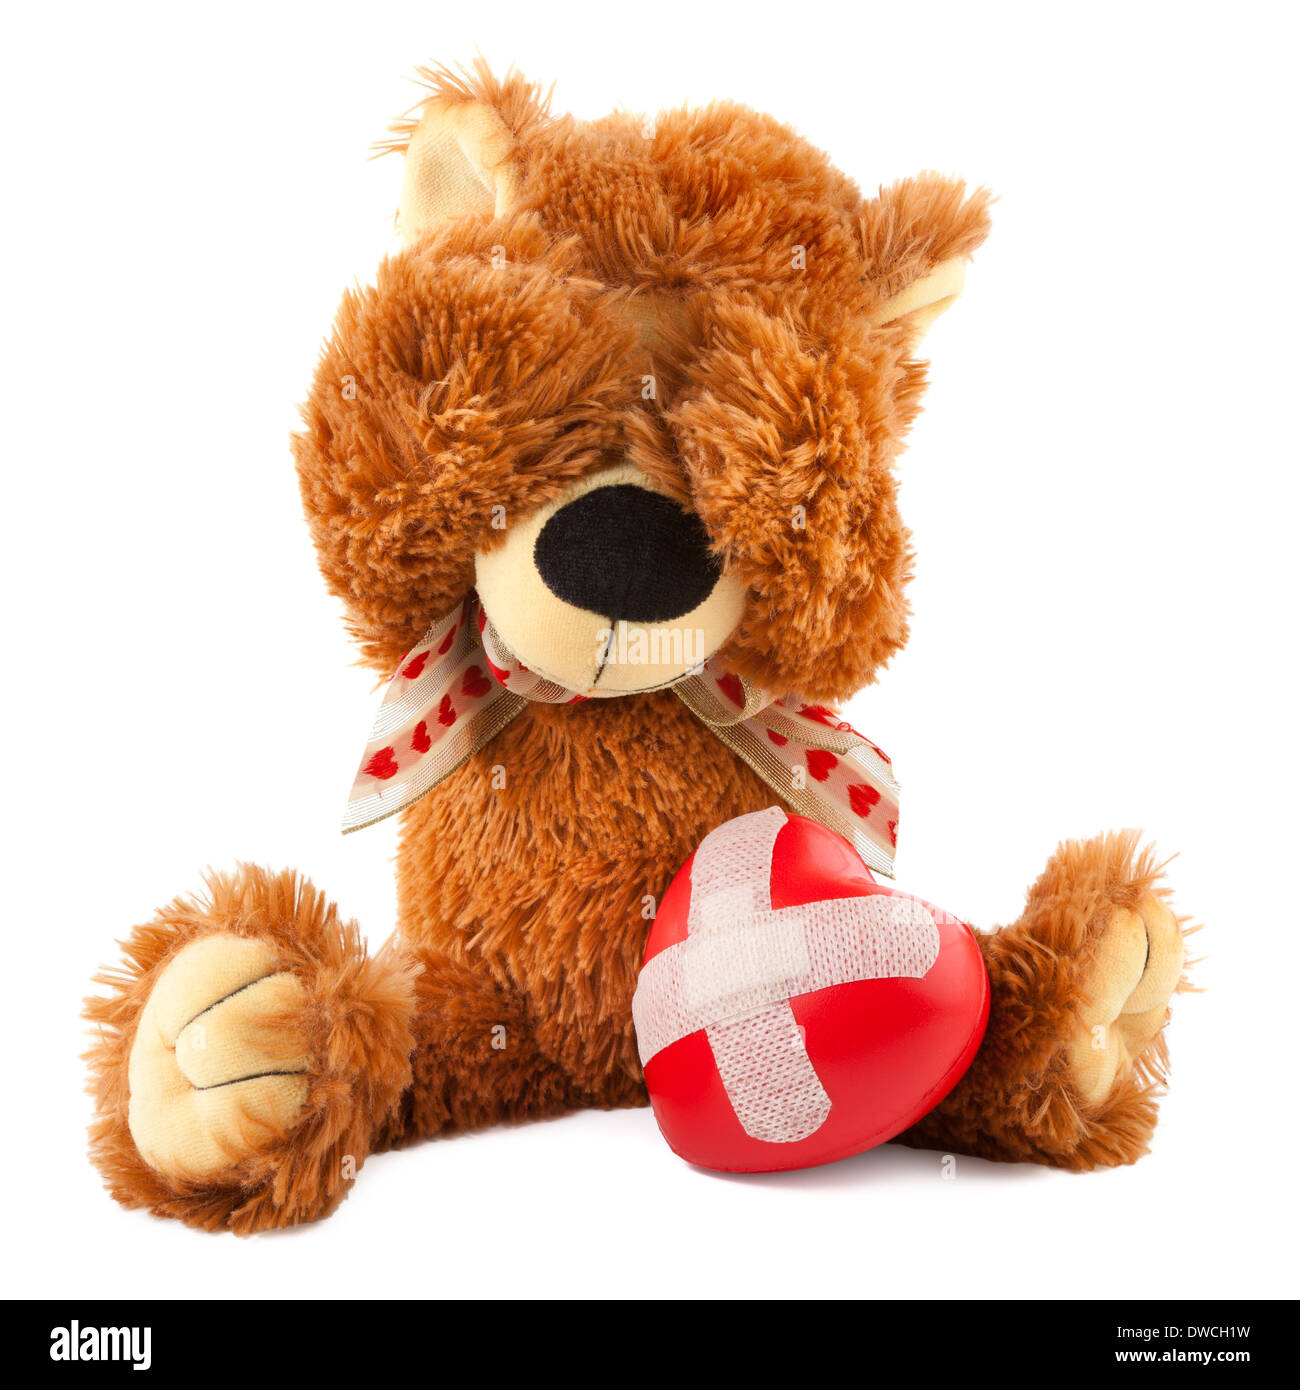 Sad Teddy Bear Tumblr